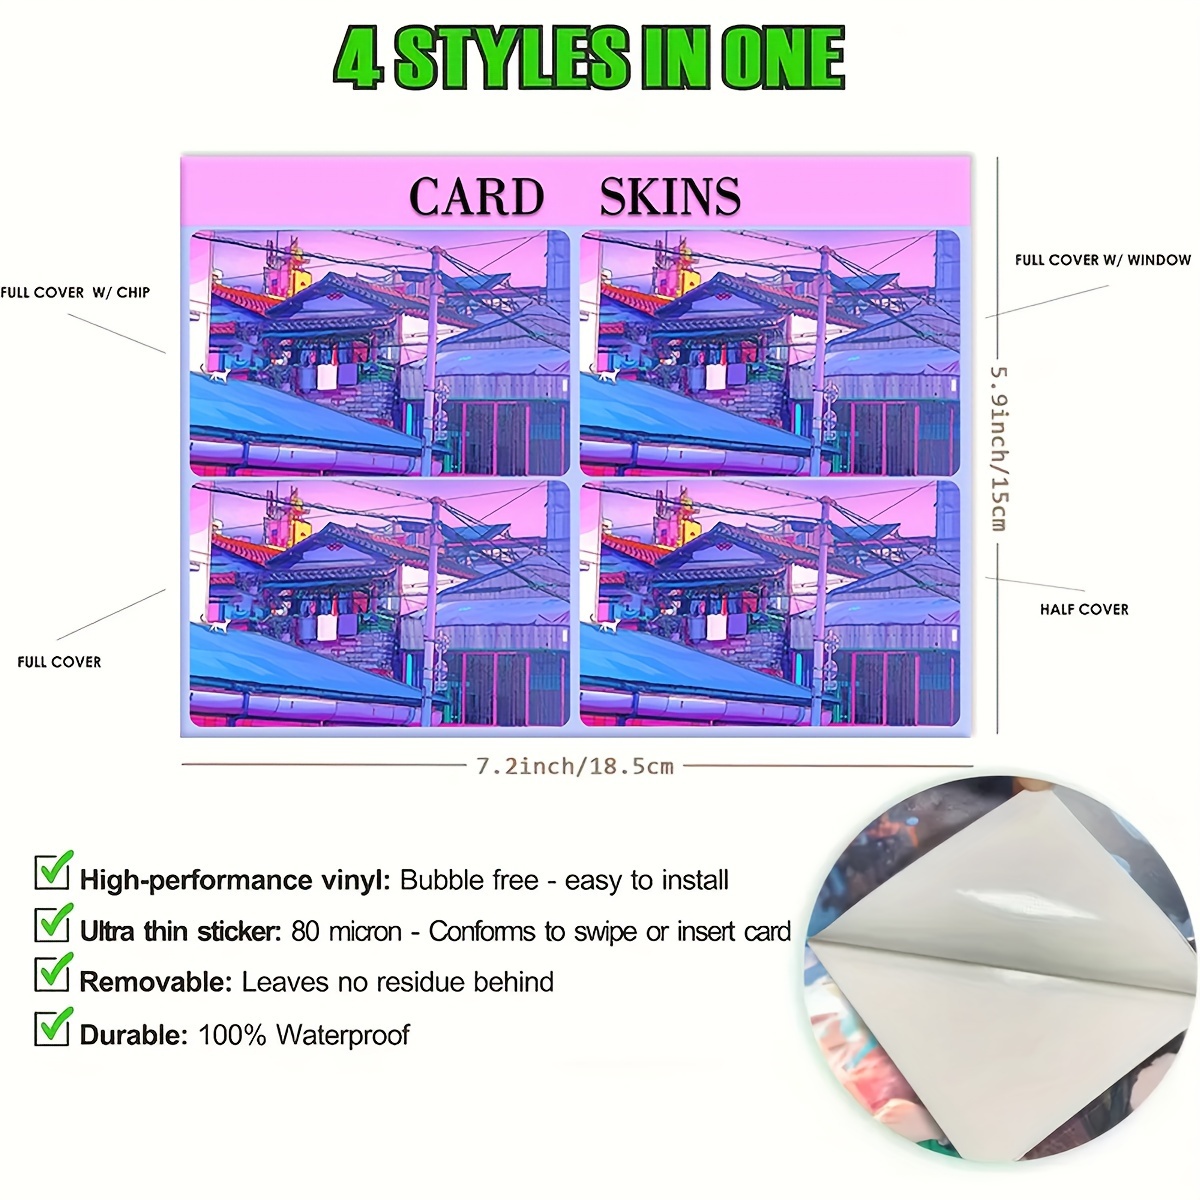 Anime Debit Card Skin & Card Skin